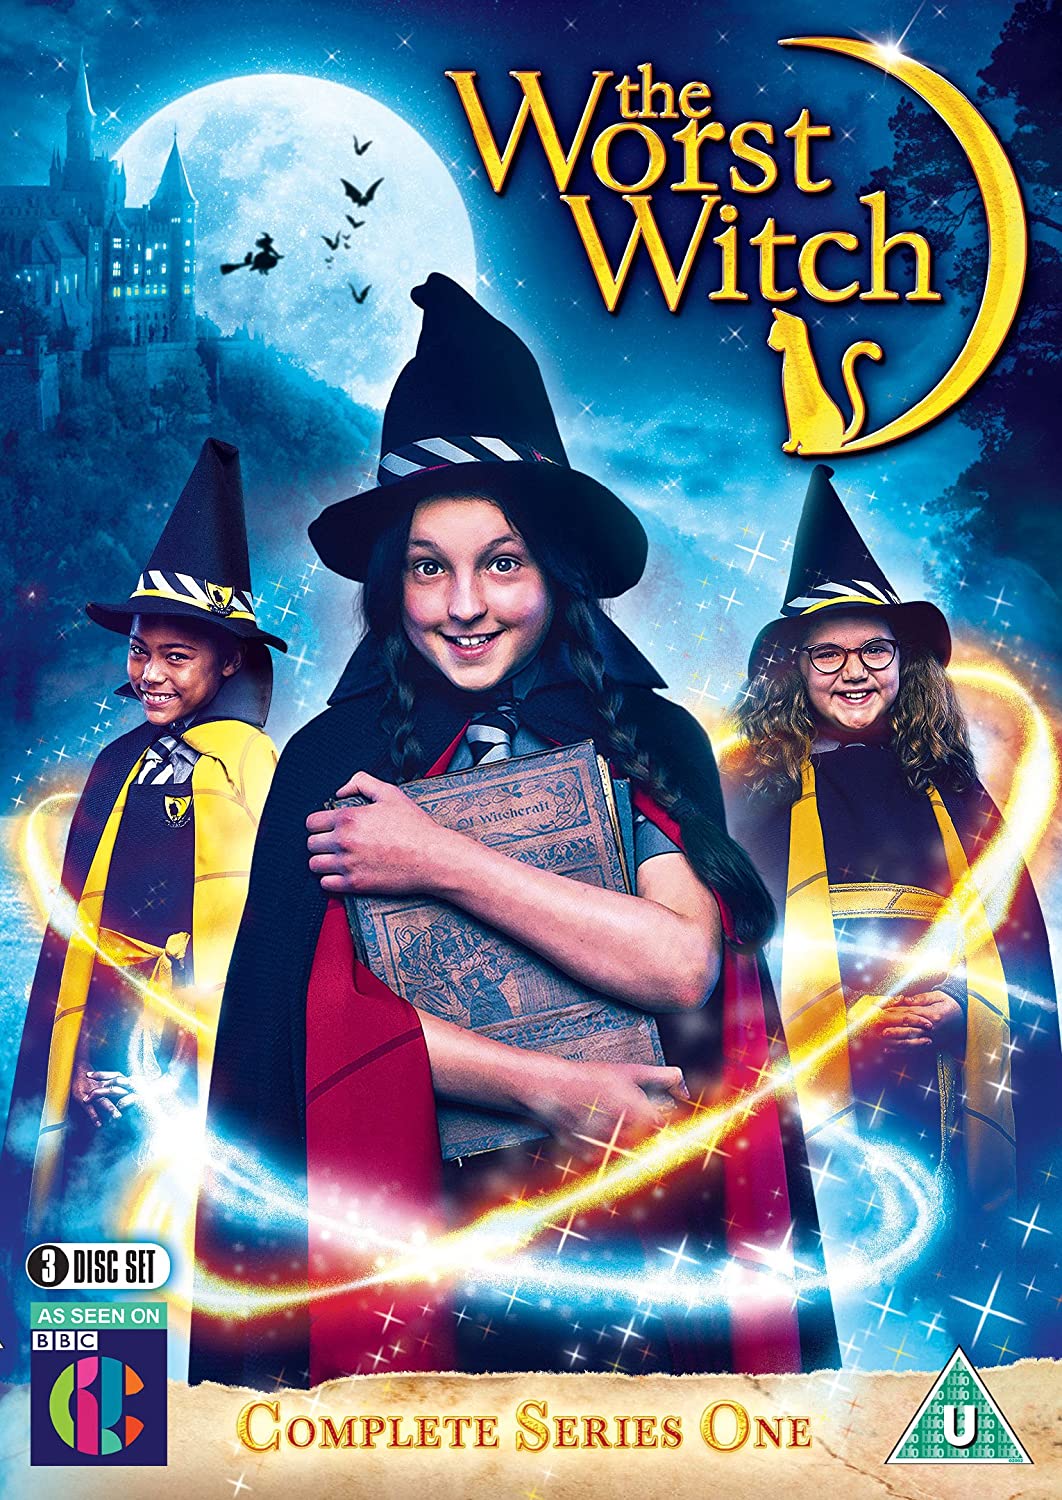 ดูหนังออนไลน์ฟรี The Worst Witch Season 3 (2019) โอมเพี้ยง! แม่มดน้อยสู้ตาย ซีซั่น 3 ตอนที่ 3